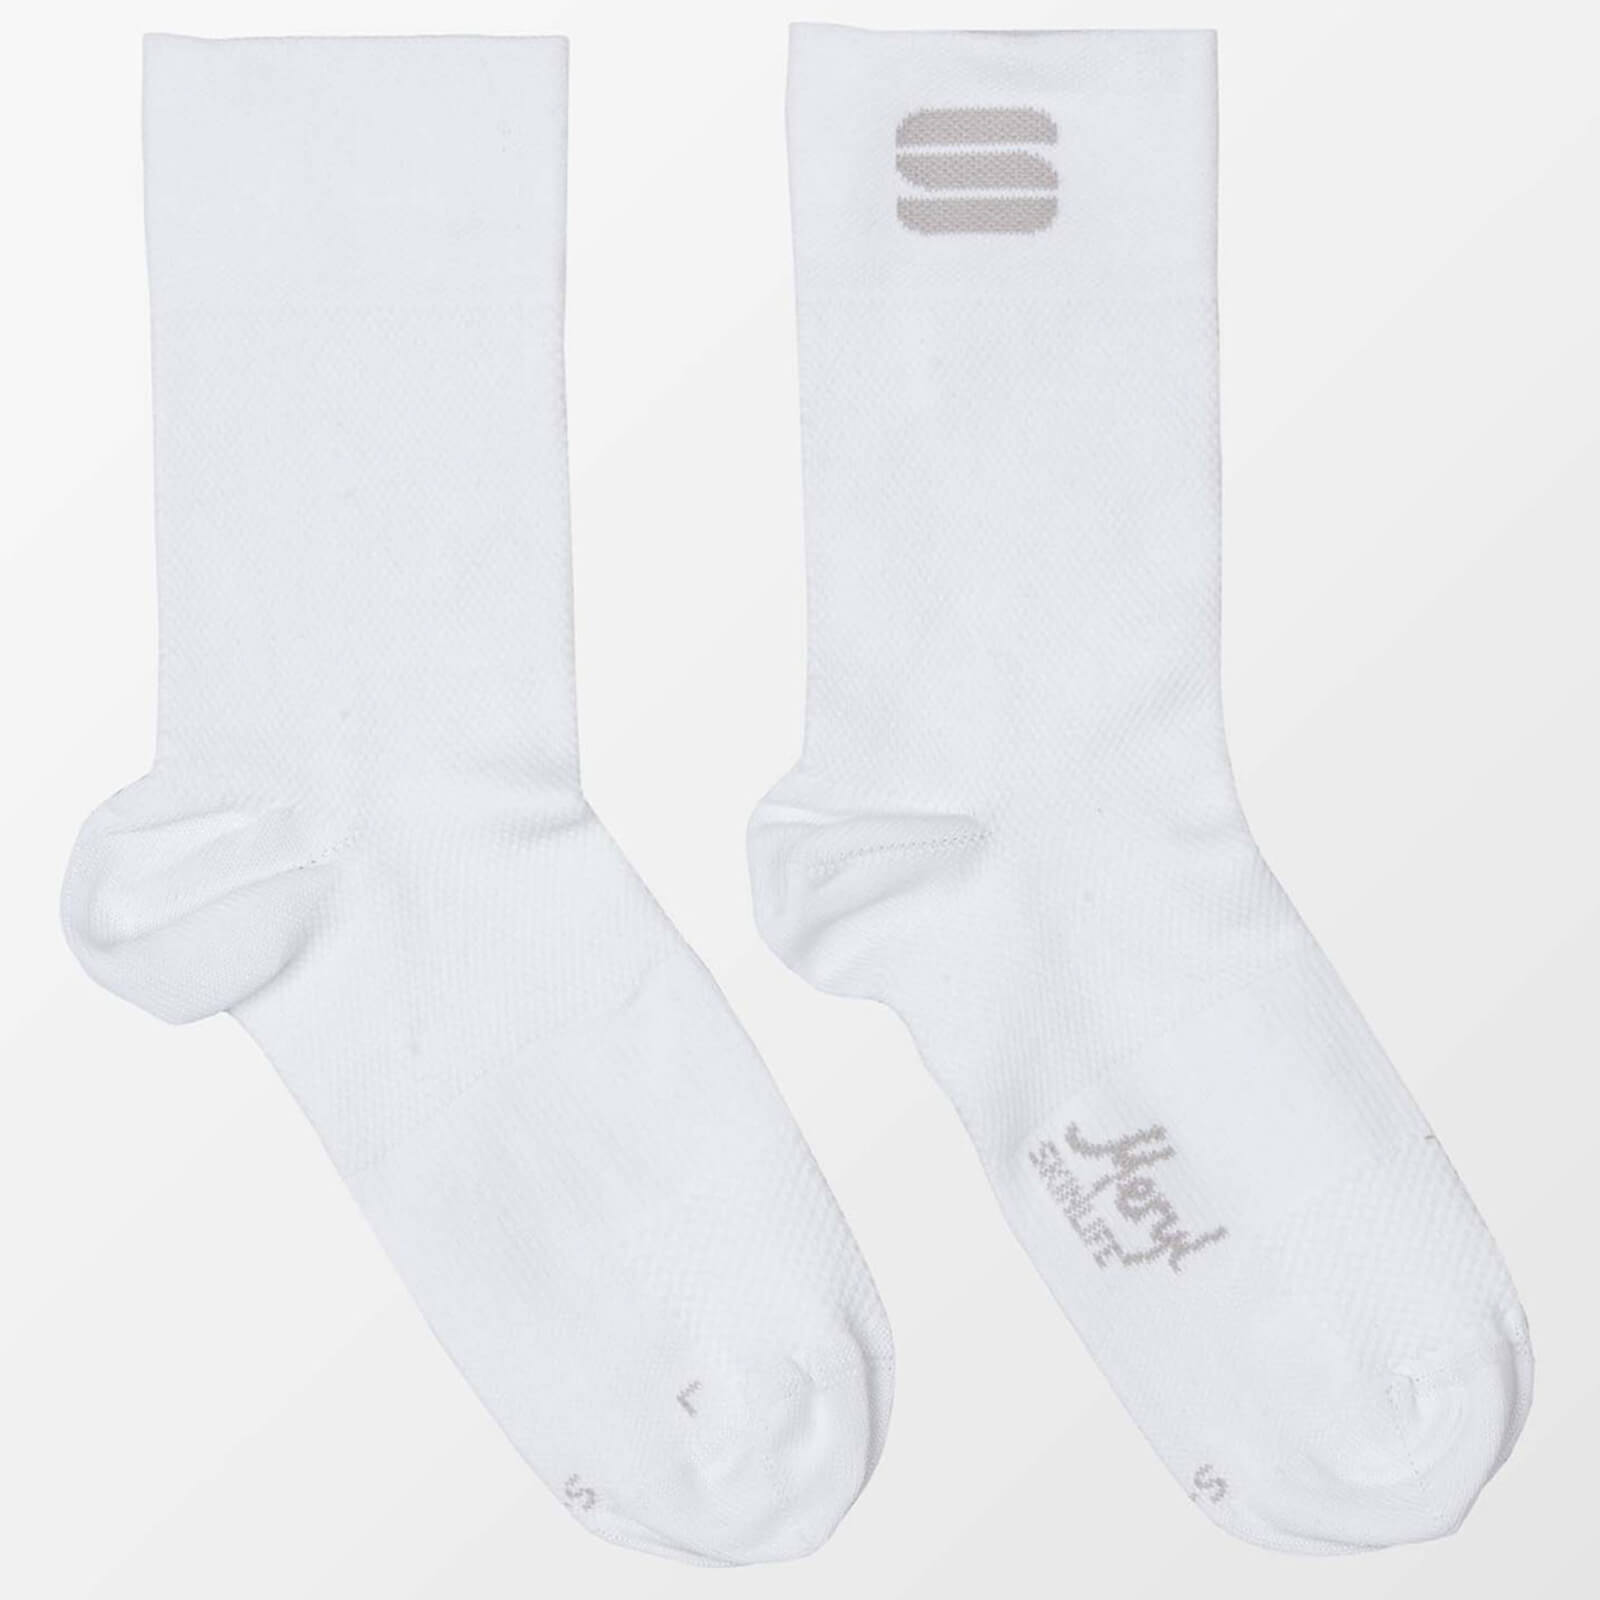 Sportful Women's Matchy Socks - L/XL - White